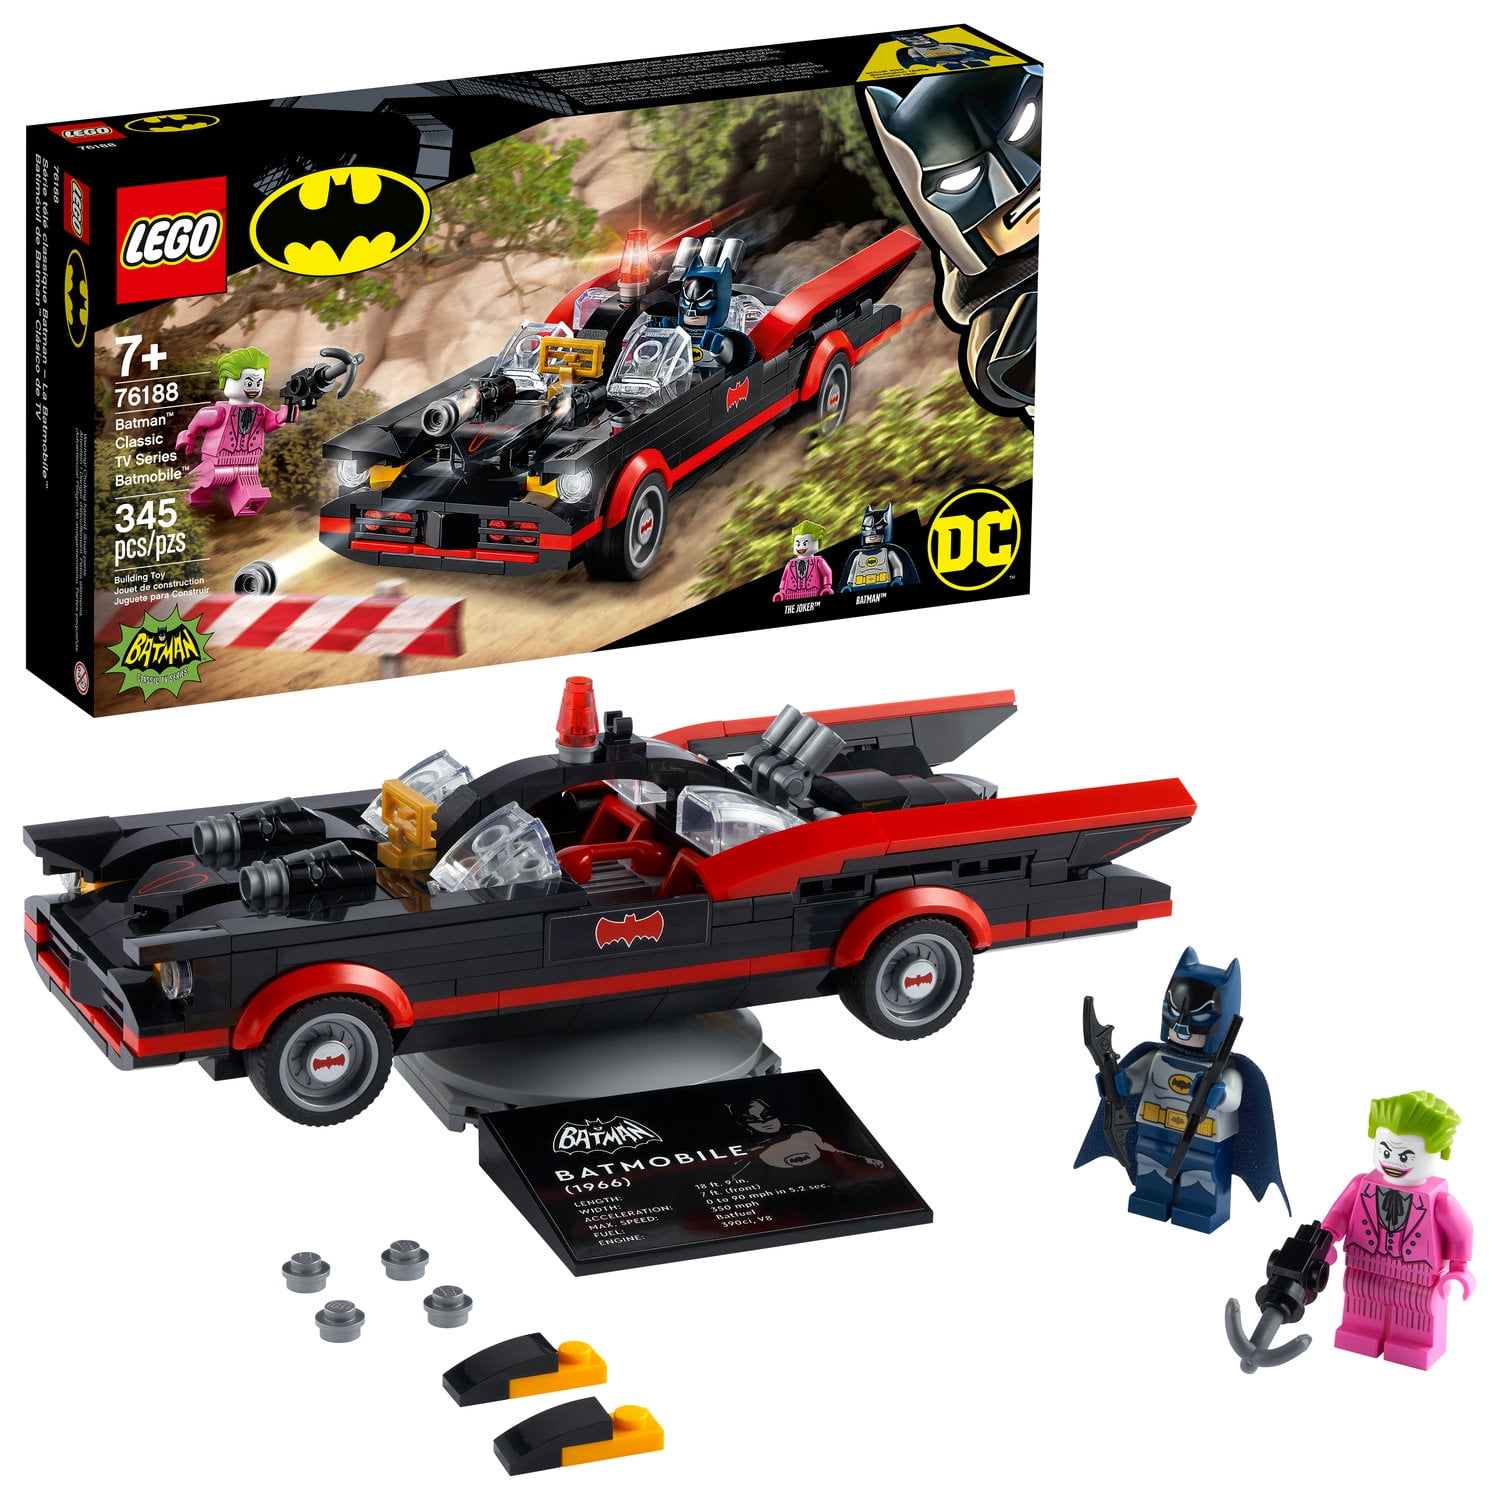 LEGO Batman: Batman Classic TV Series Batmobile 76188 Toy (345 Pieces) - Walmart.com